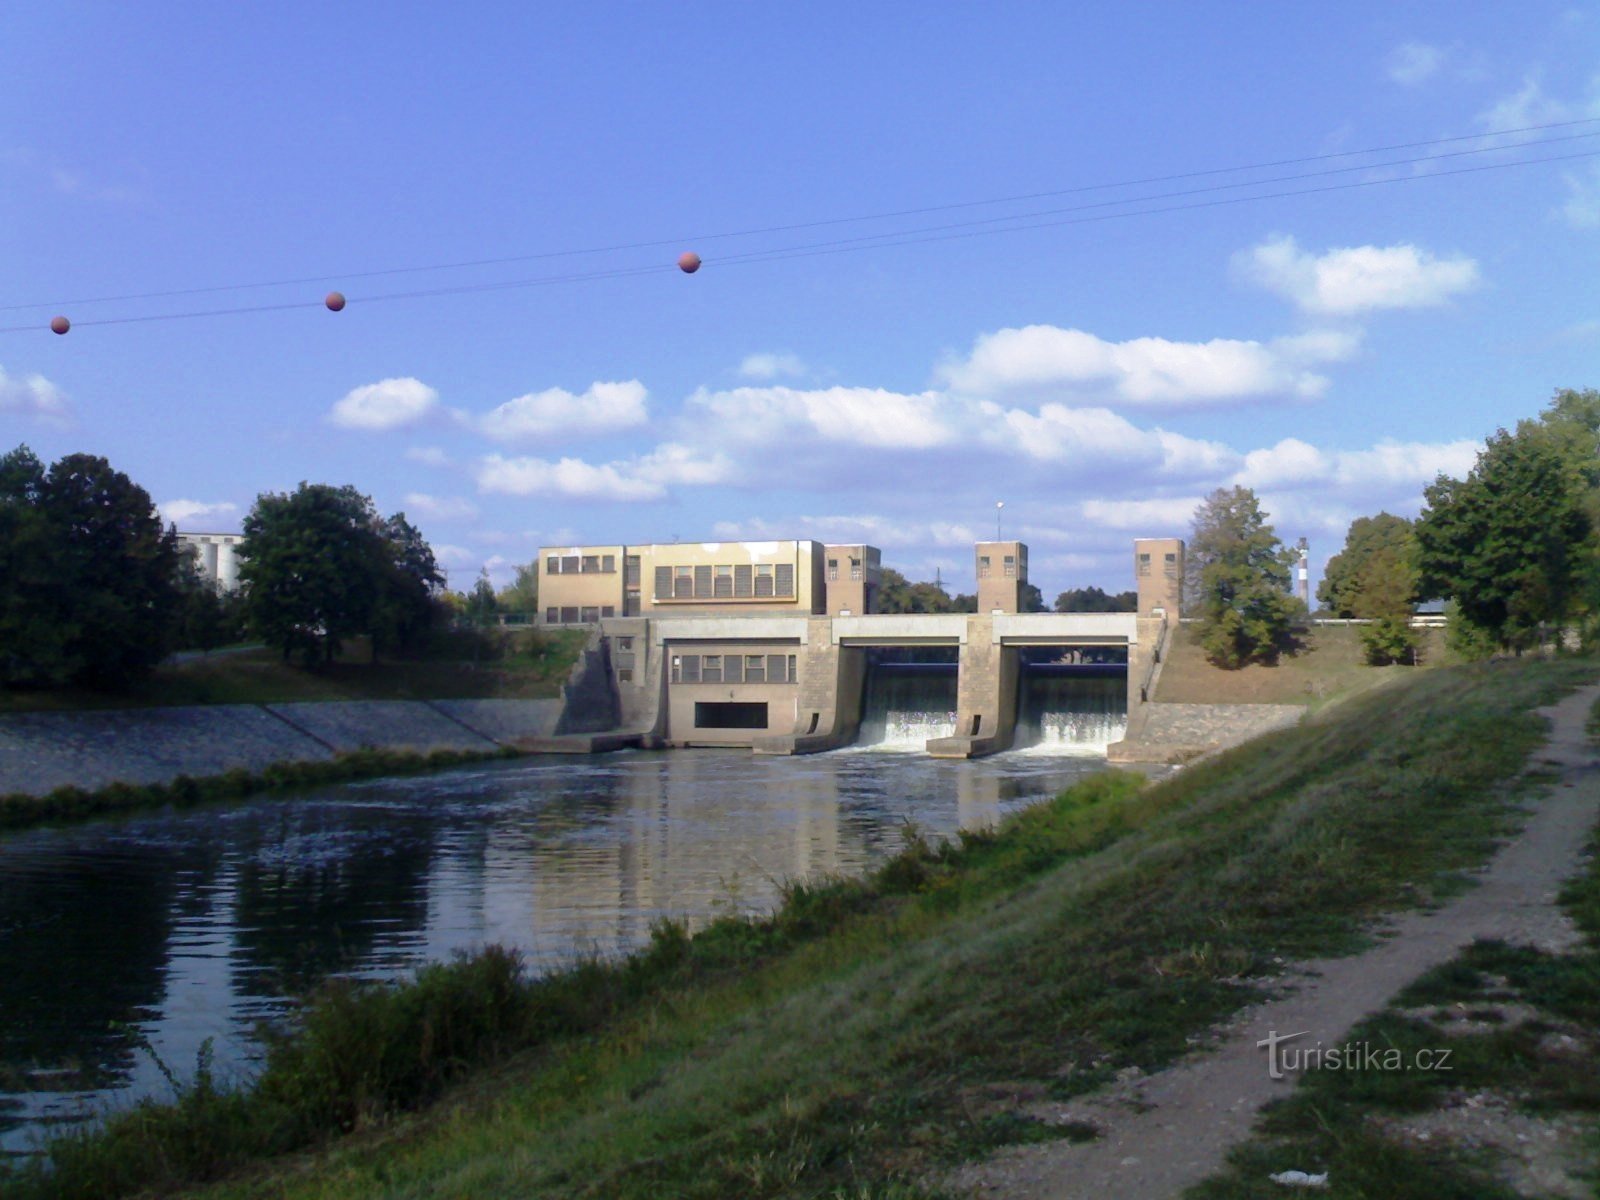 Barajul Předměřice - centrală hidroelectrică